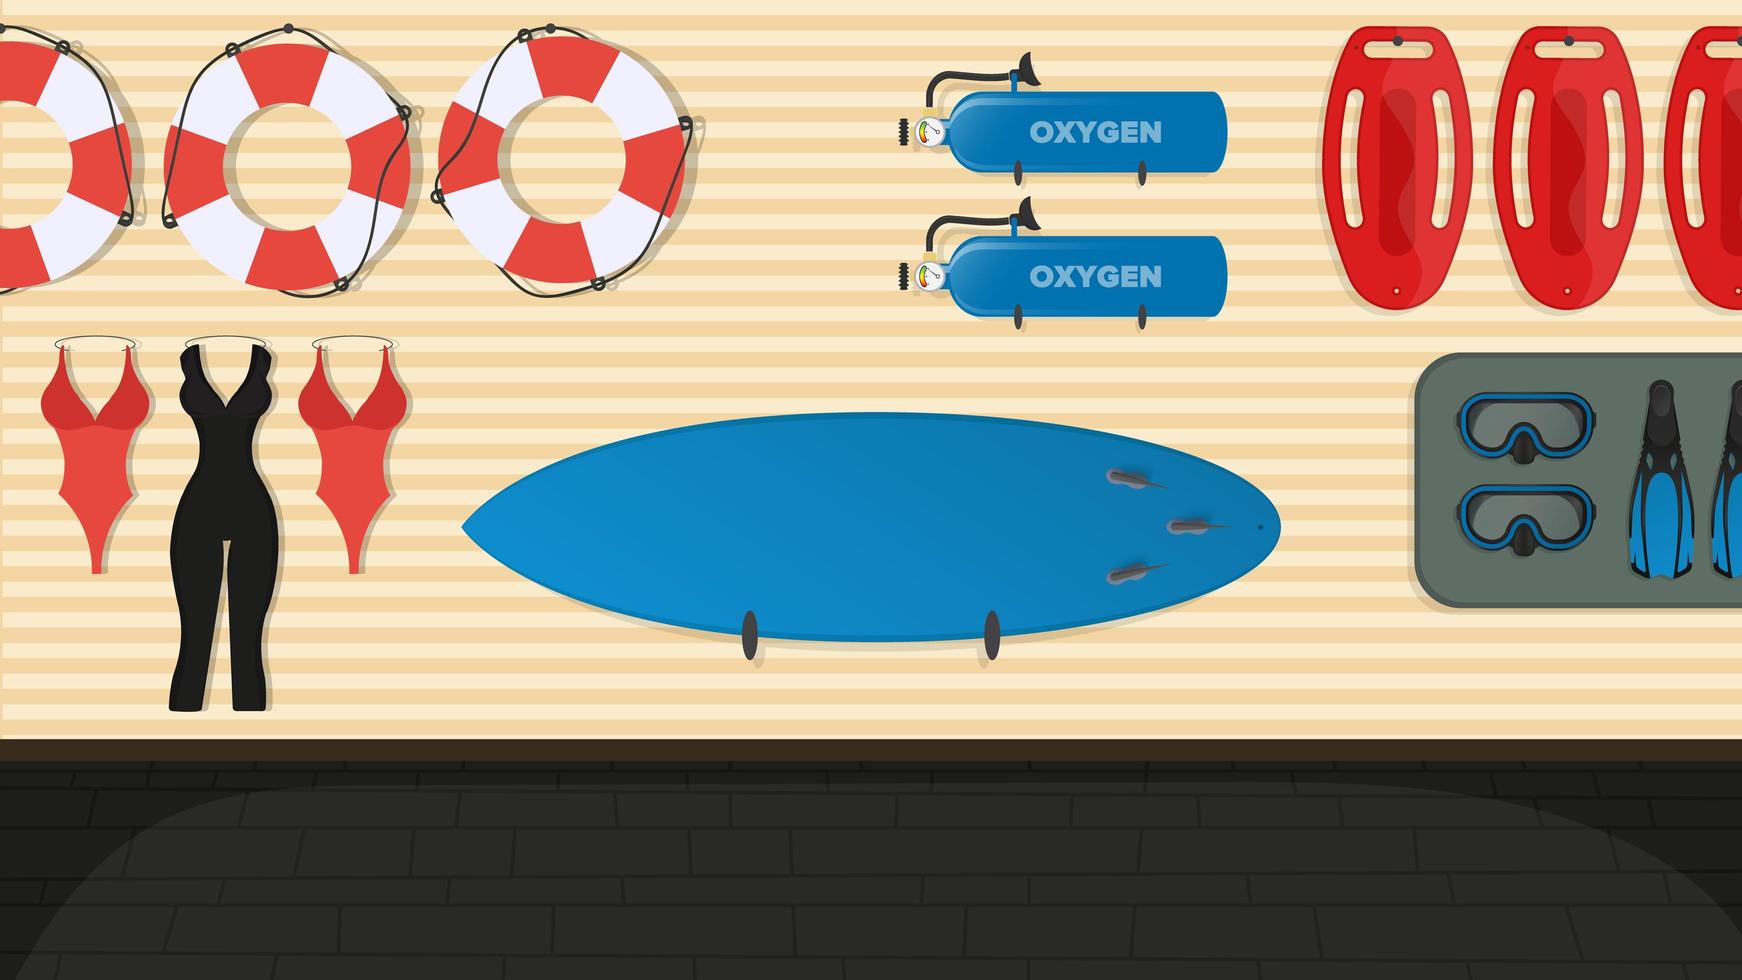 Strand Rettungsschwimmer Zimmer. Schwimmbrett, Rettungsring, Flossen und Maske, Sauerstofftank. Cartoon-Stil. Vektor-Illustration. vektor